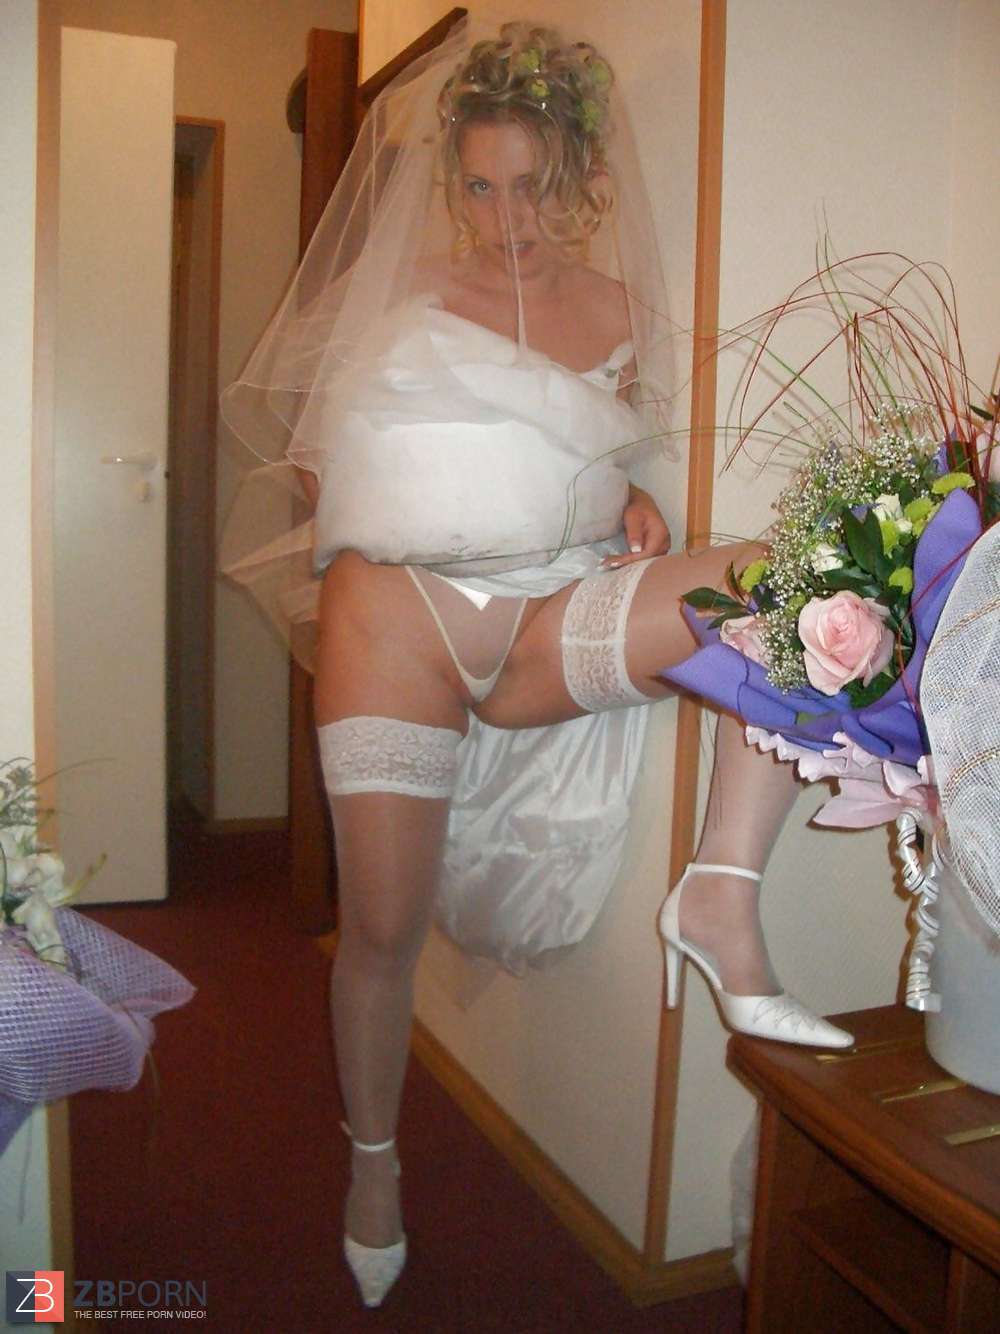 Brides Wedding Voyeur Upskirt White Undies And Hooter 0 Hot Sex Picture